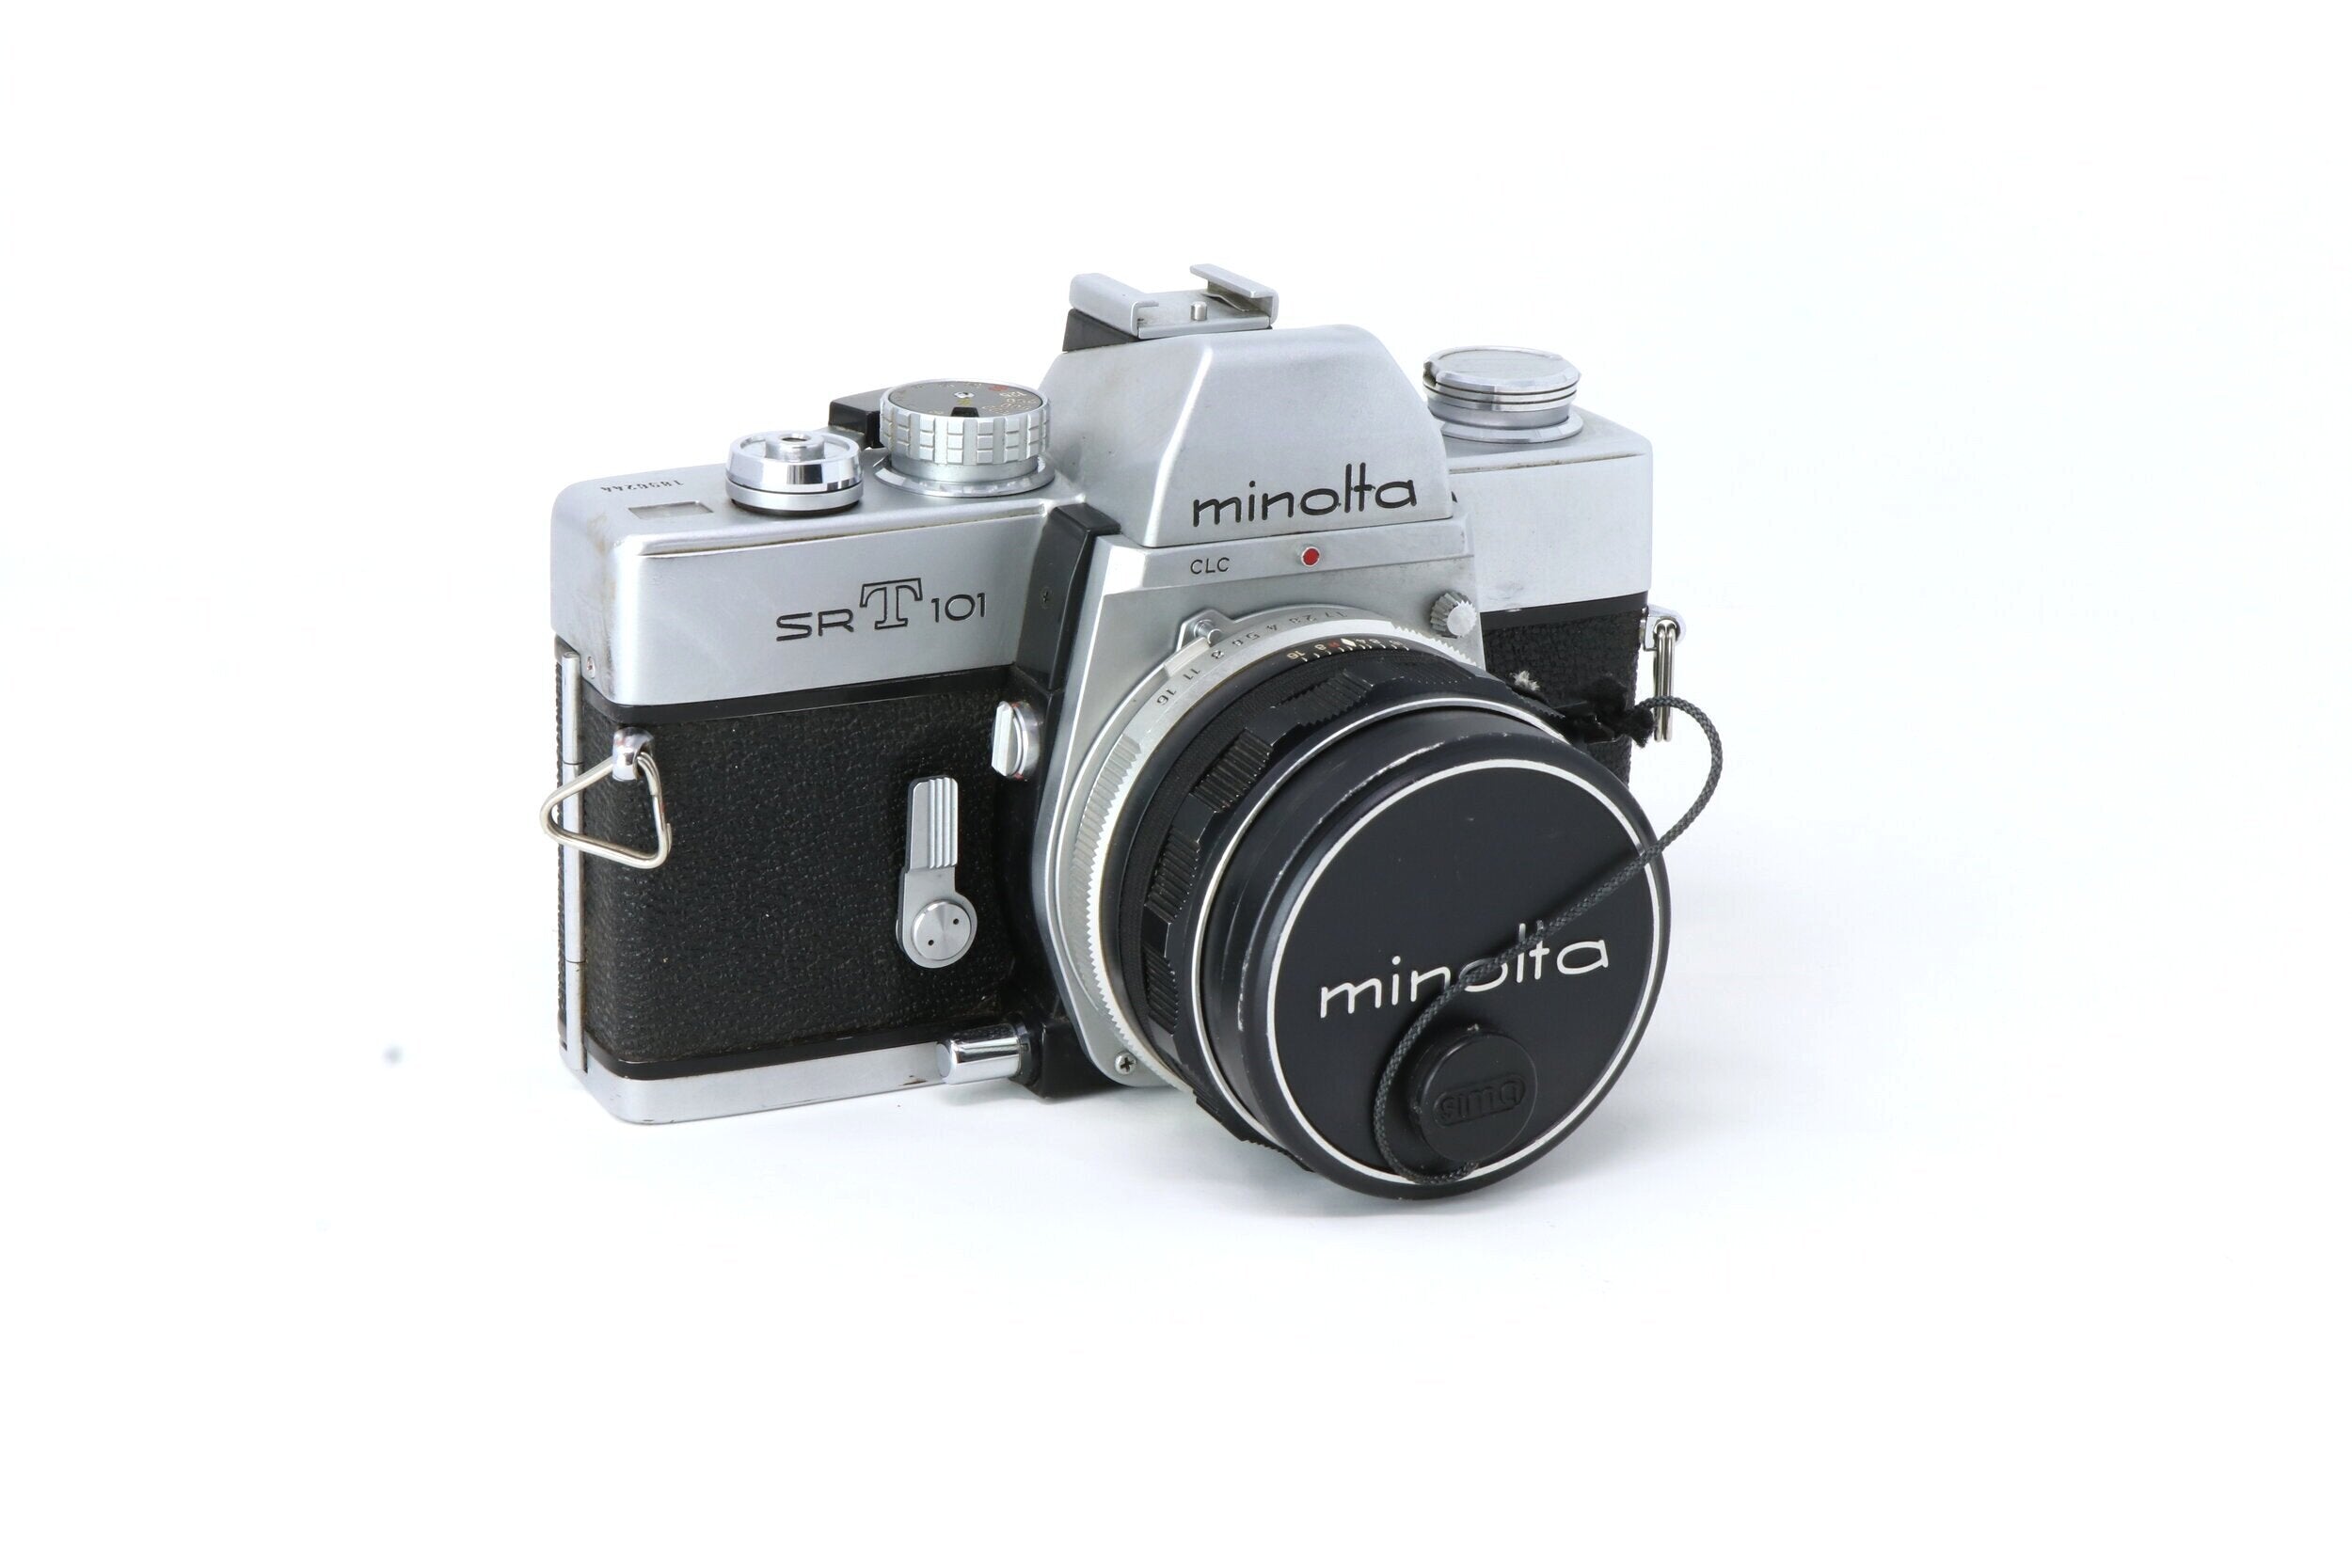 Minolta SRT 101 35mm Film Camera with 50mm lens (1969) – Relics